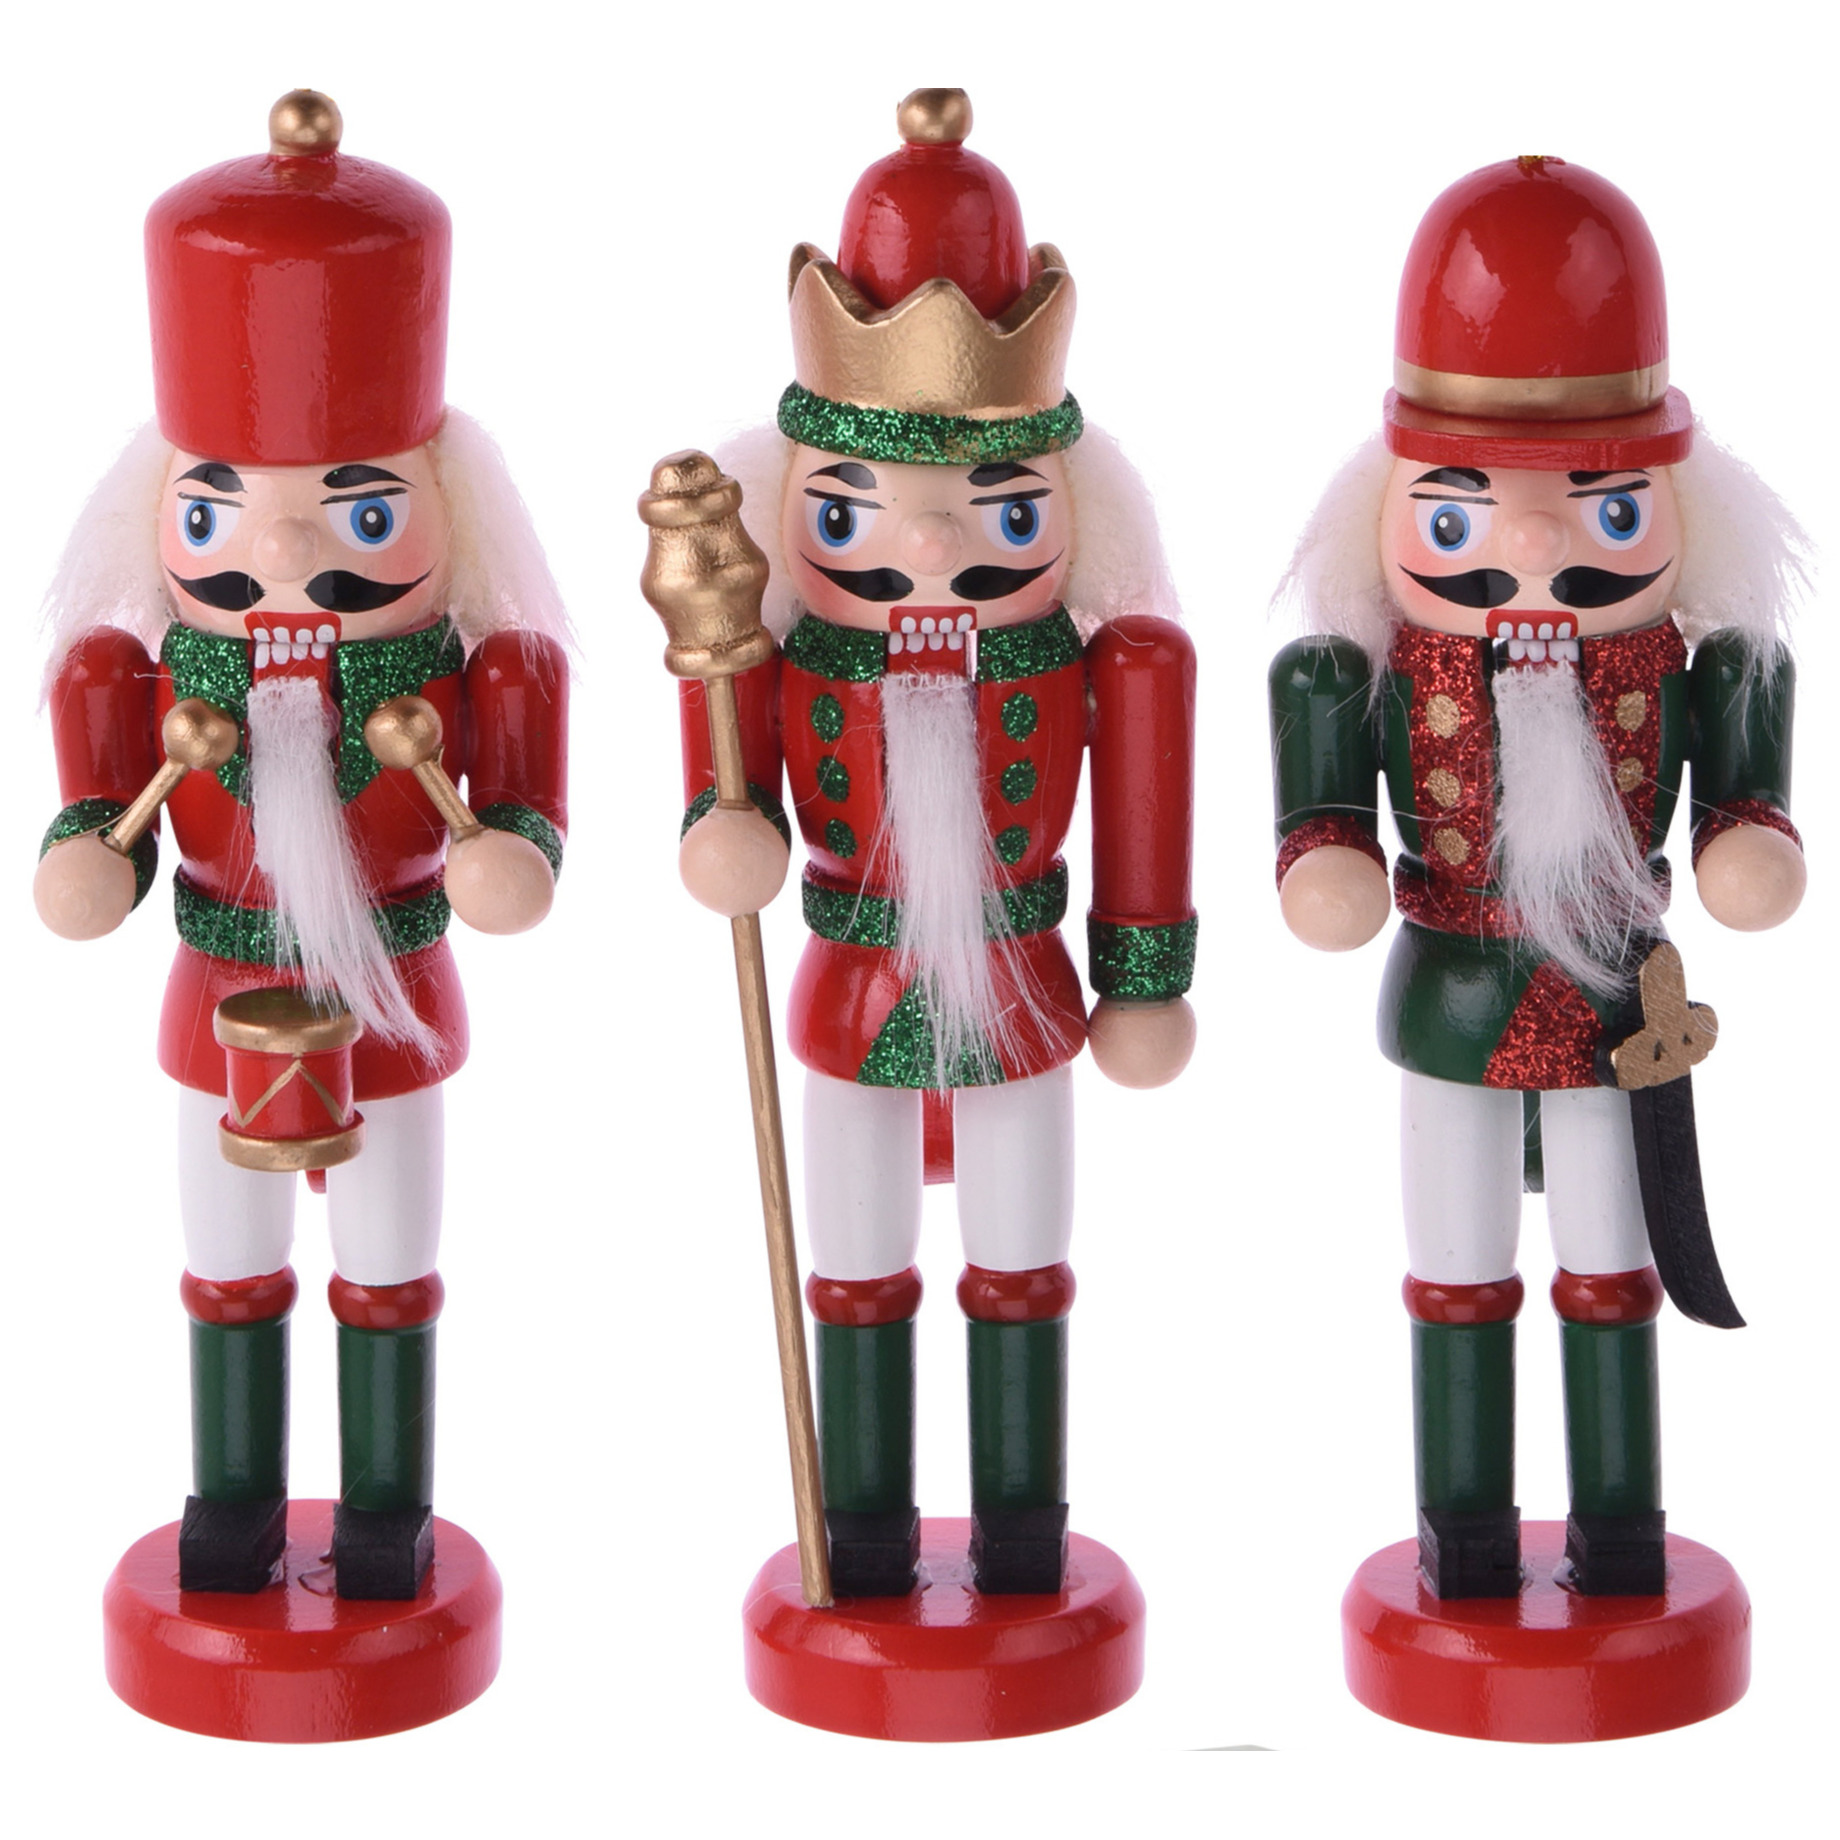 6x Kerstboomhangers notenkrakers poppetjes-soldaten rood-groen 12 cm